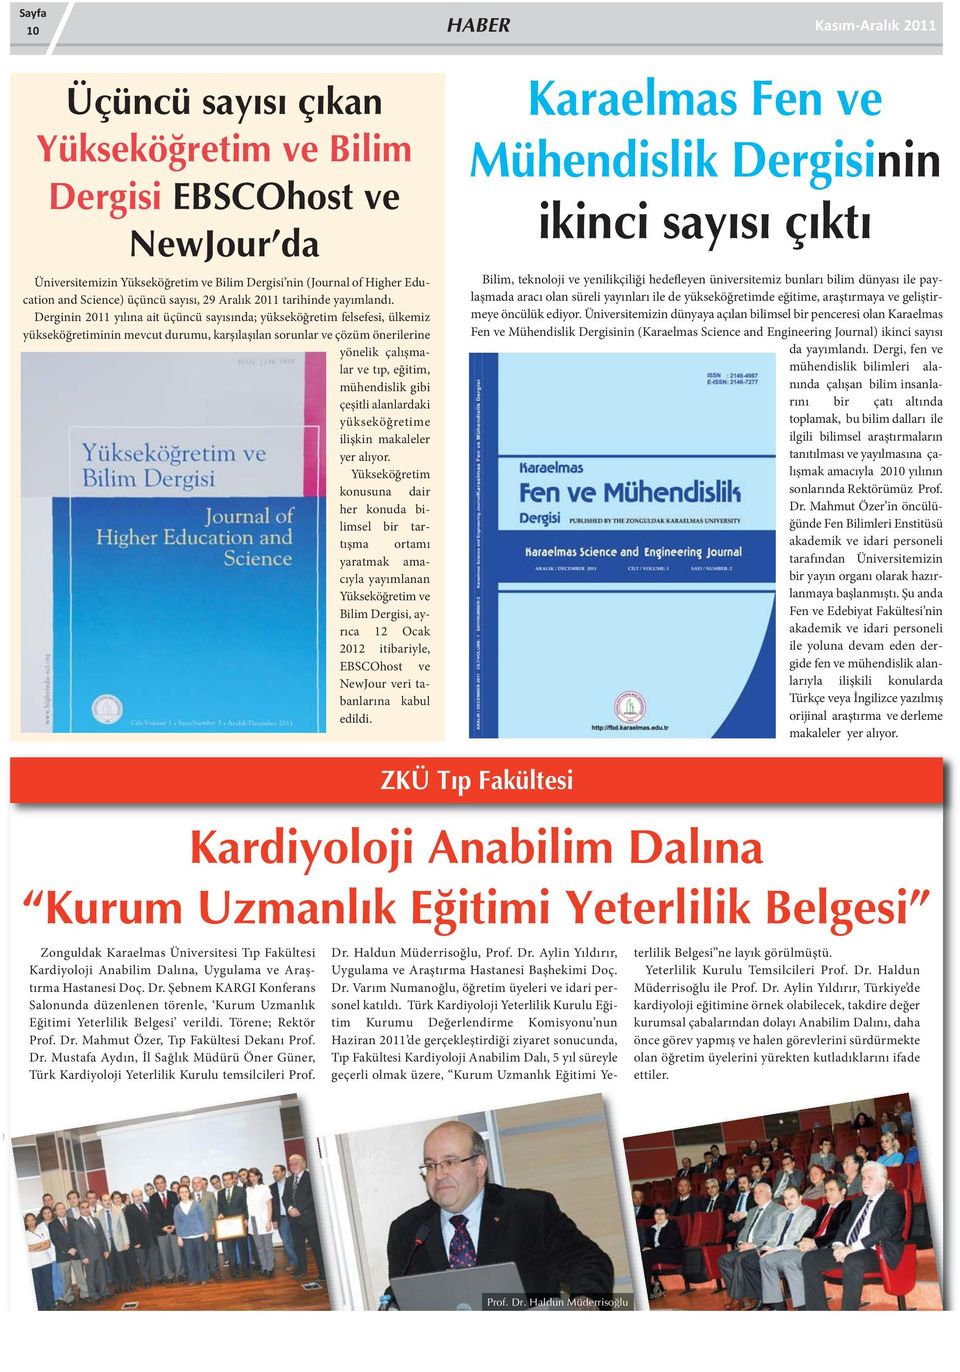 Derginin 2011 yılına ait üçüncü sayısında; yükseköğretim felsefesi, ülkemiz yükseköğretiminin mevcut durumu, karşılaşılan sorunlar ve çözüm önerilerine yönelik çalışmalar ve tıp, eğitim, mühendislik